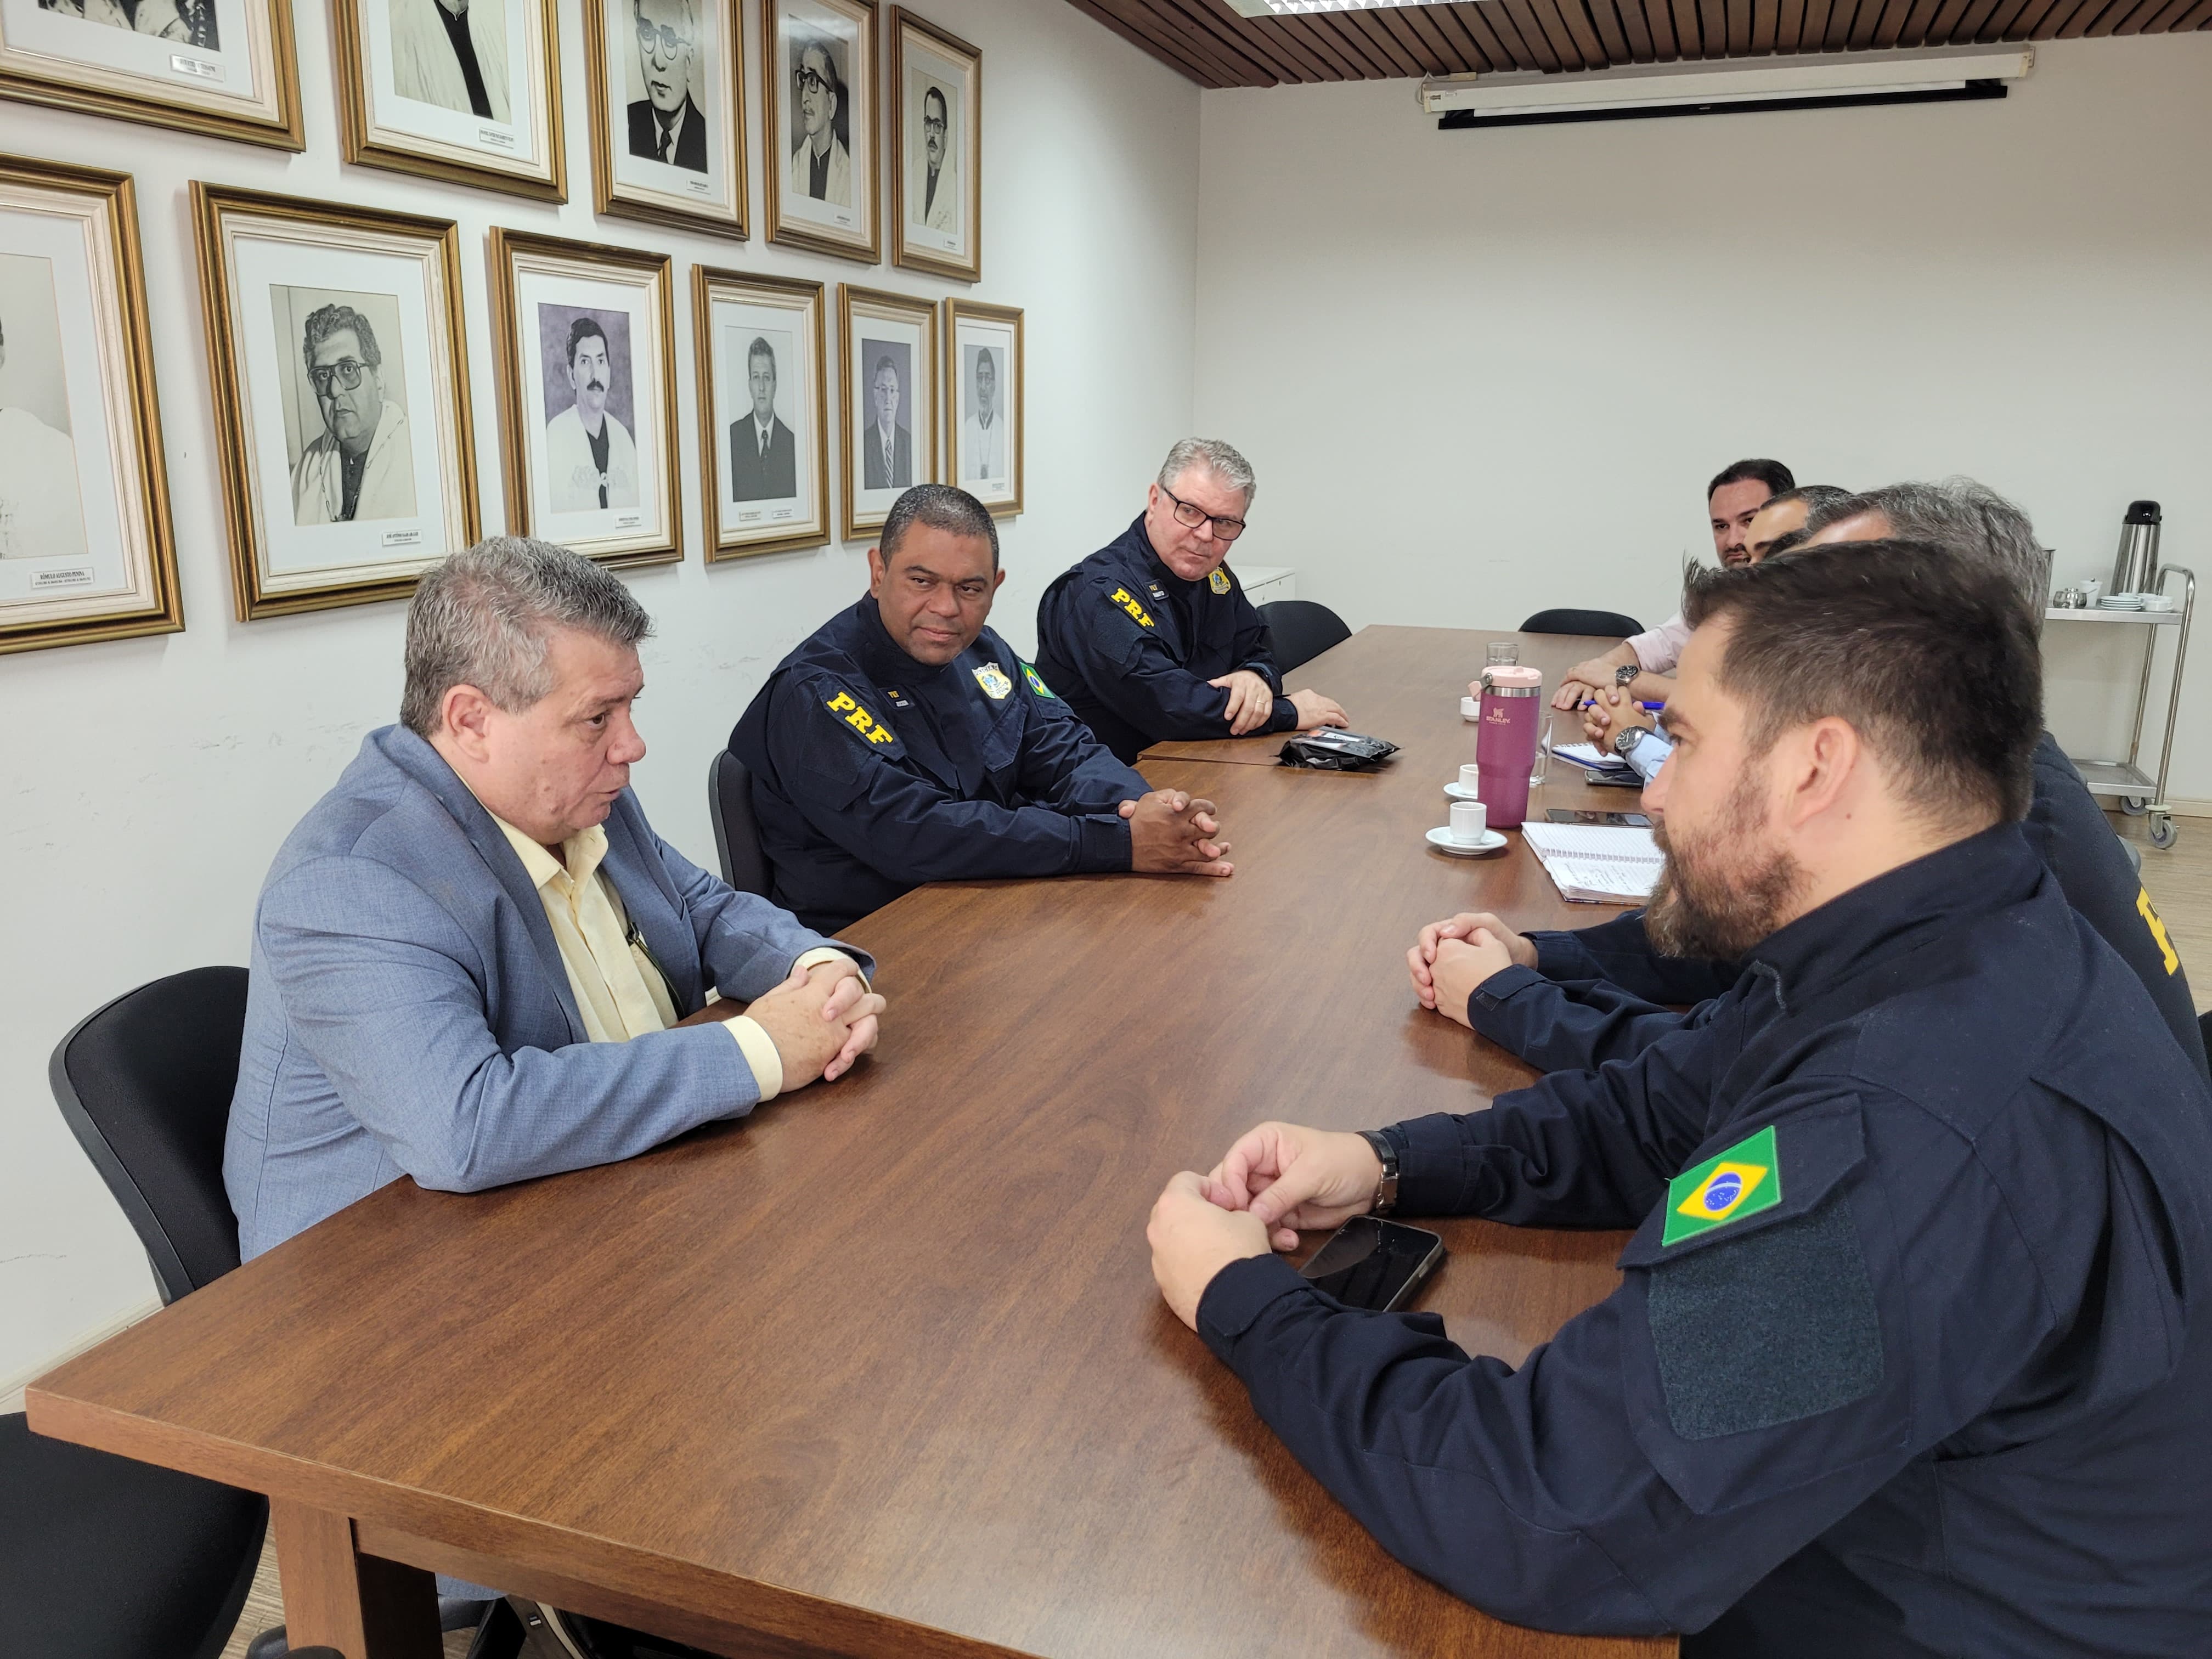 O reitor Eustáquio de Castro reunido com os policiais federais. Todos estão sentados em torno de uma mesa de madeira. Na parede, a galeria de fotos dos ex-reitores da Ufes.